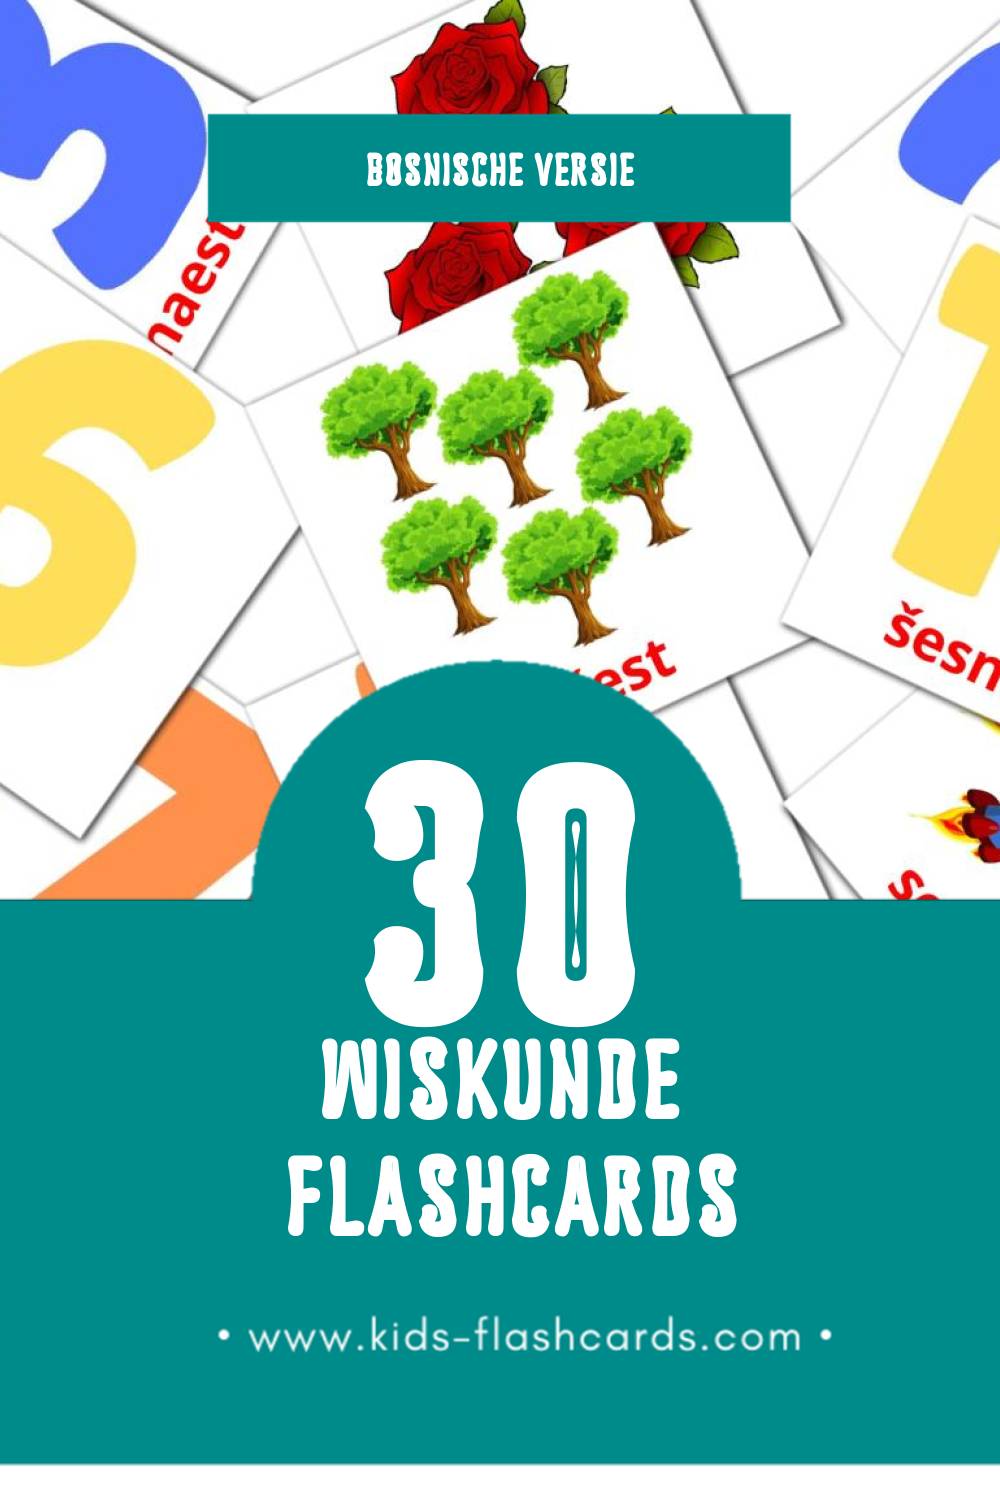 Visuele Maths Flashcards voor Kleuters (30 kaarten in het Bosnisch)